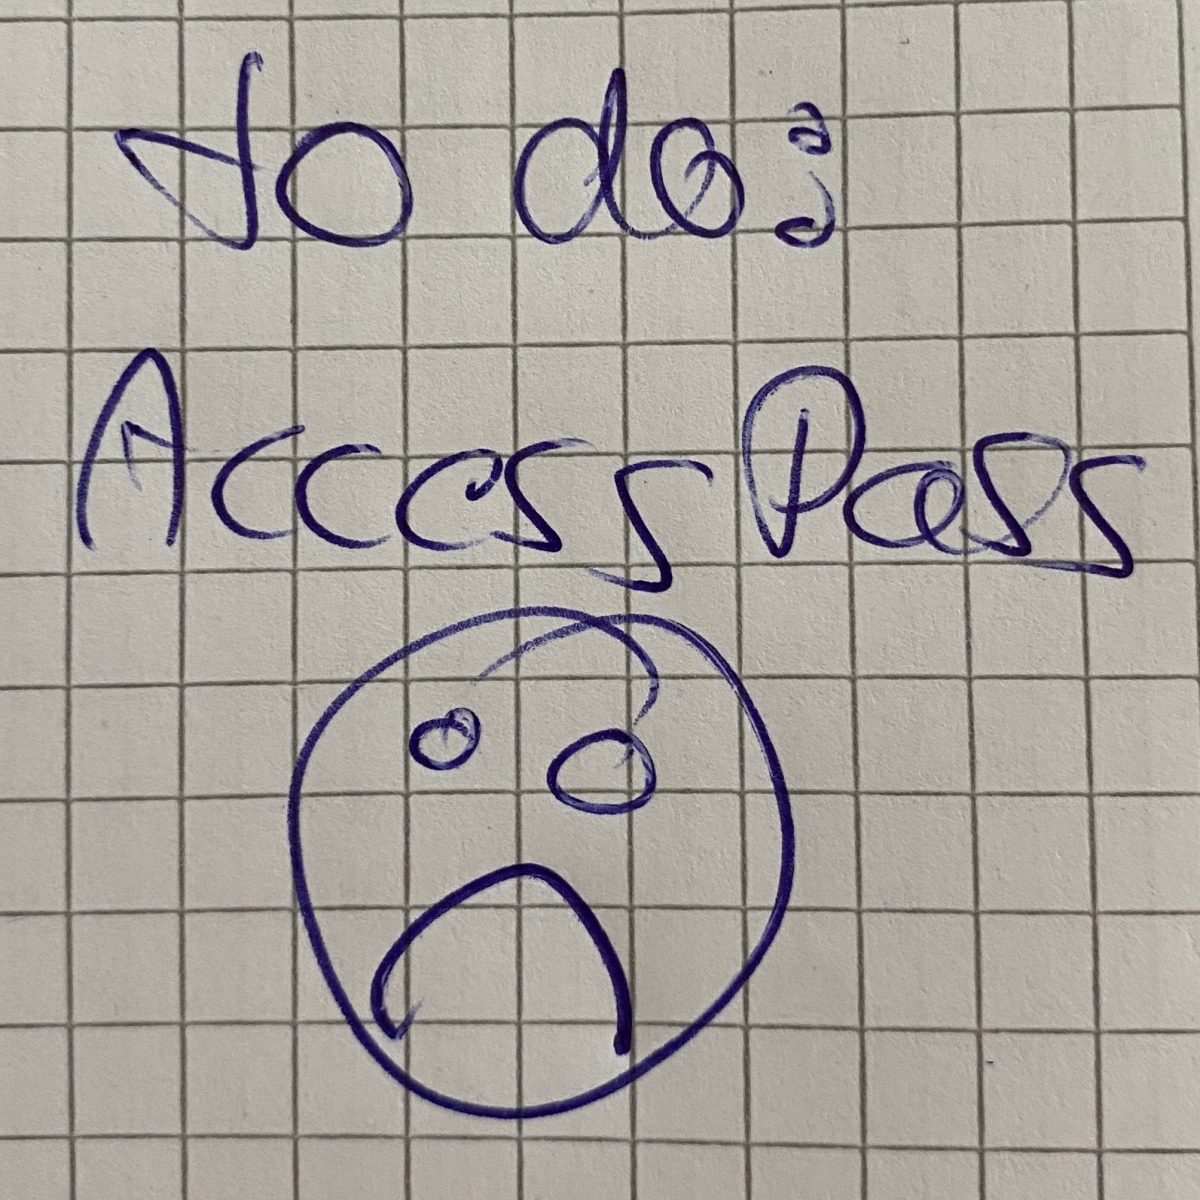 Access Permits